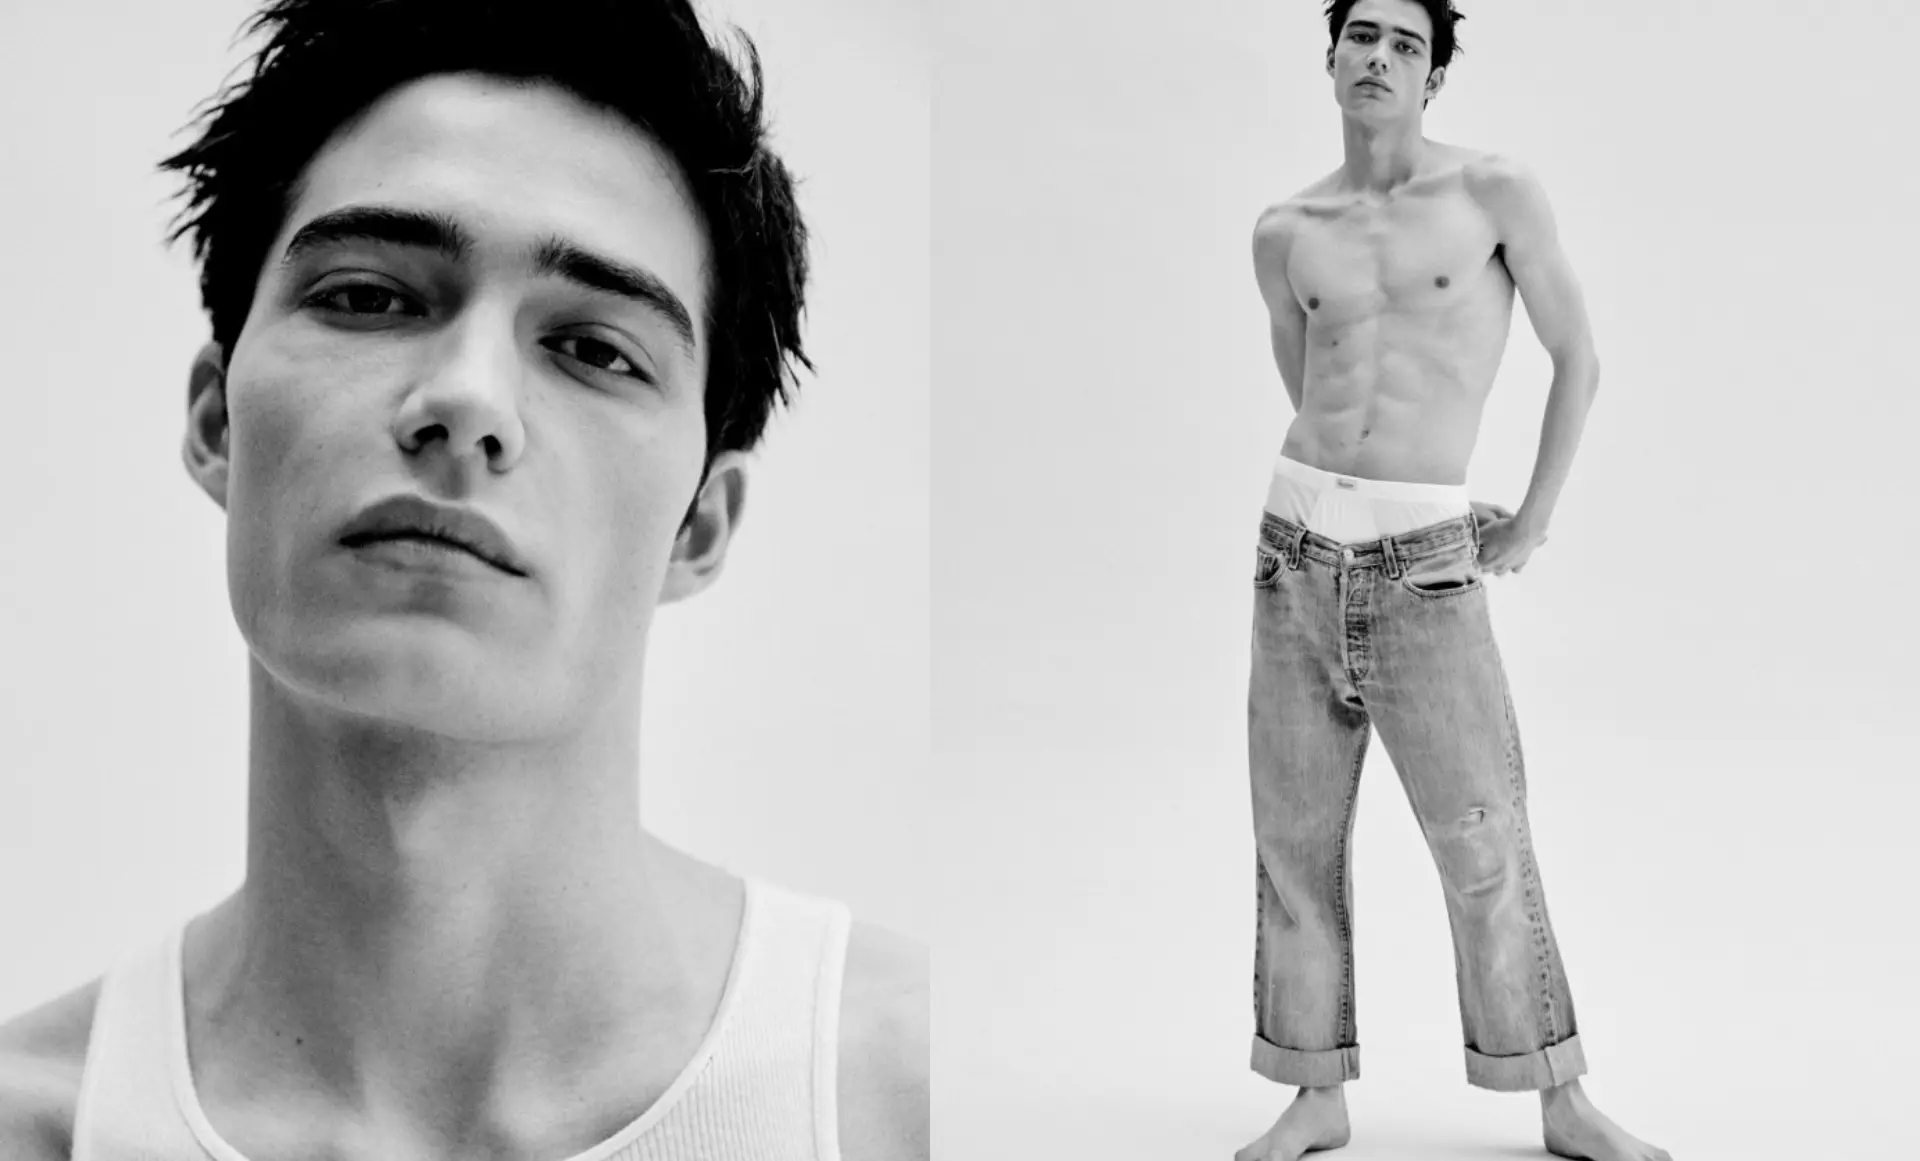 ¿Quién es Hernan Cano, uno de los modelos españoles del momento?